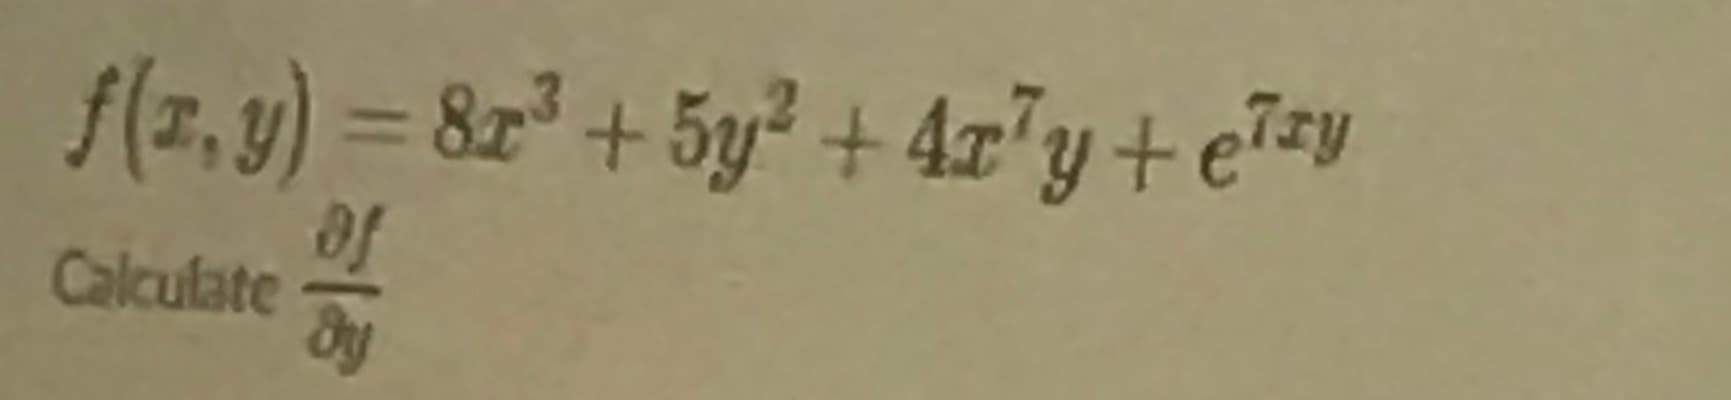 f(7,y) = 8z² + 5y² + 4z'y+e7=y
%3D
Calculate
710
